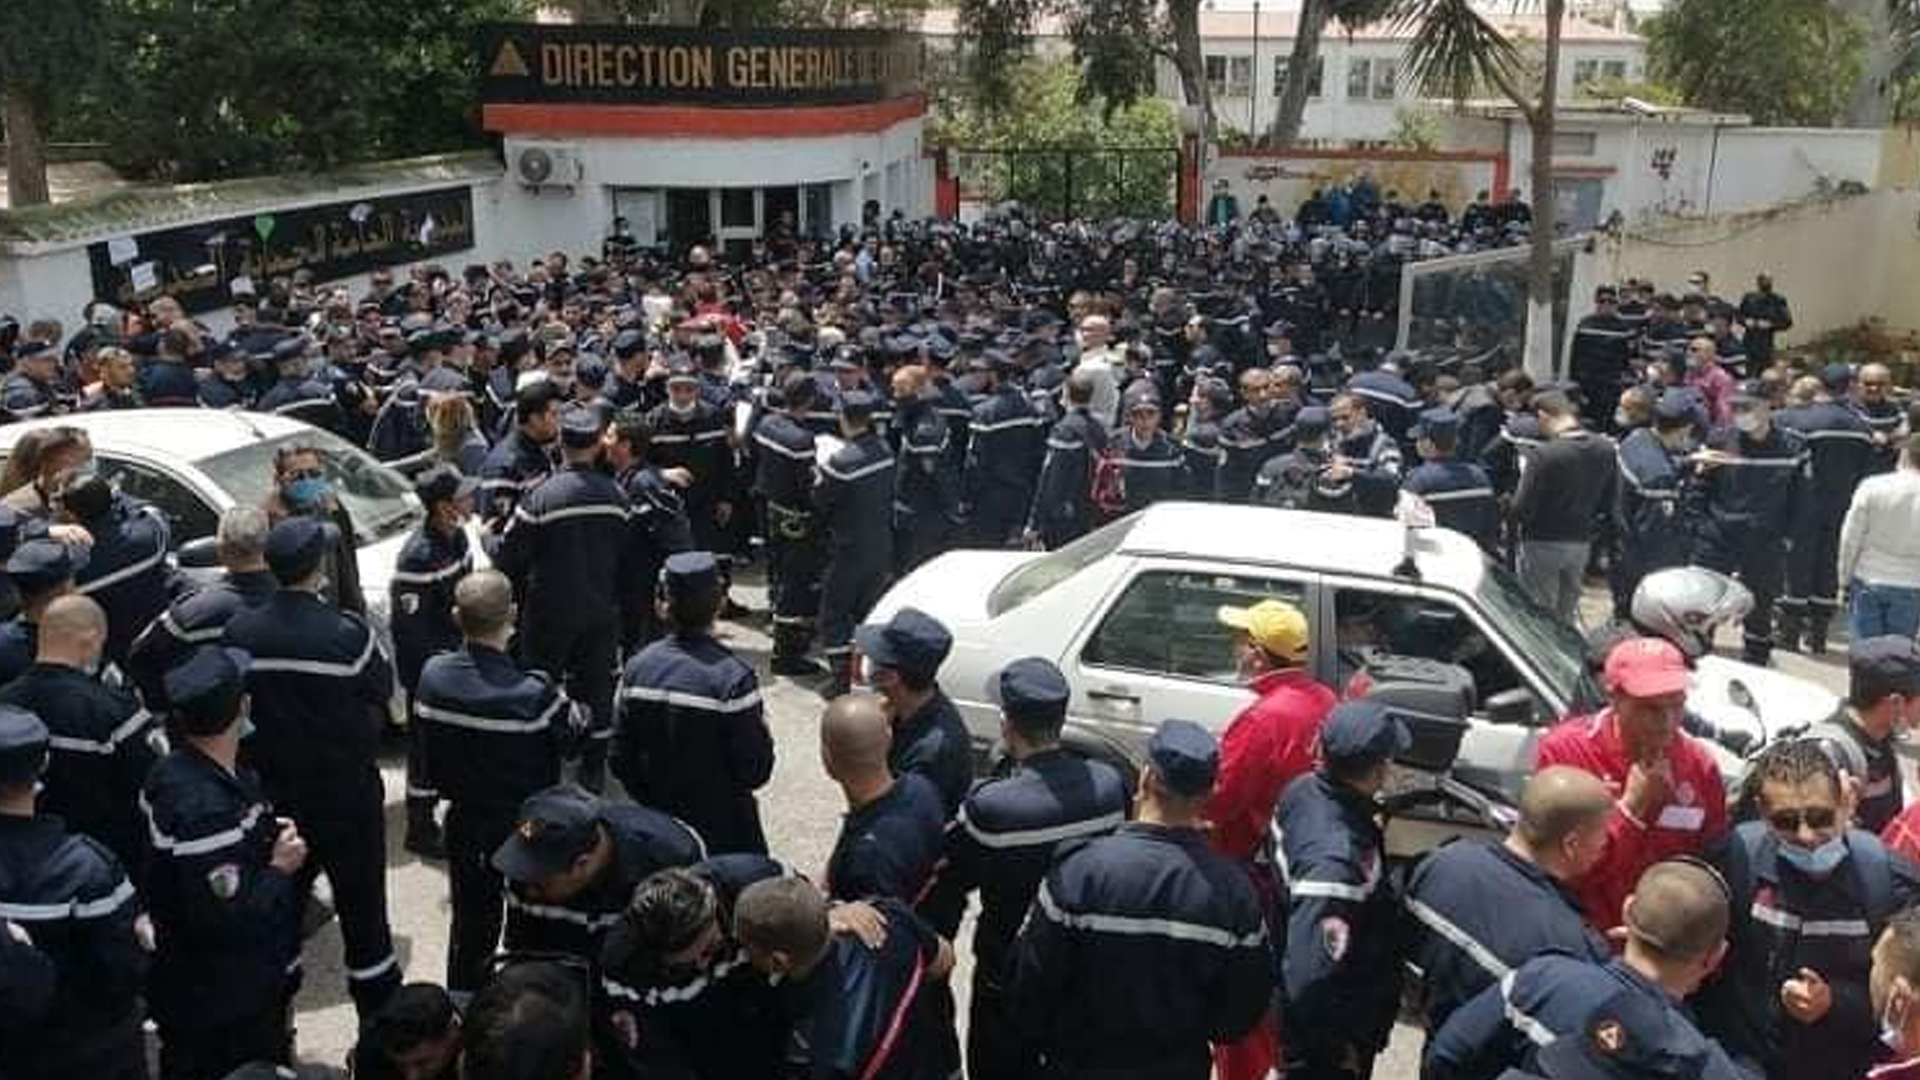 © DR | protestation des pompiers devant le siège de la direction générale à Alger le 2 mai 2021